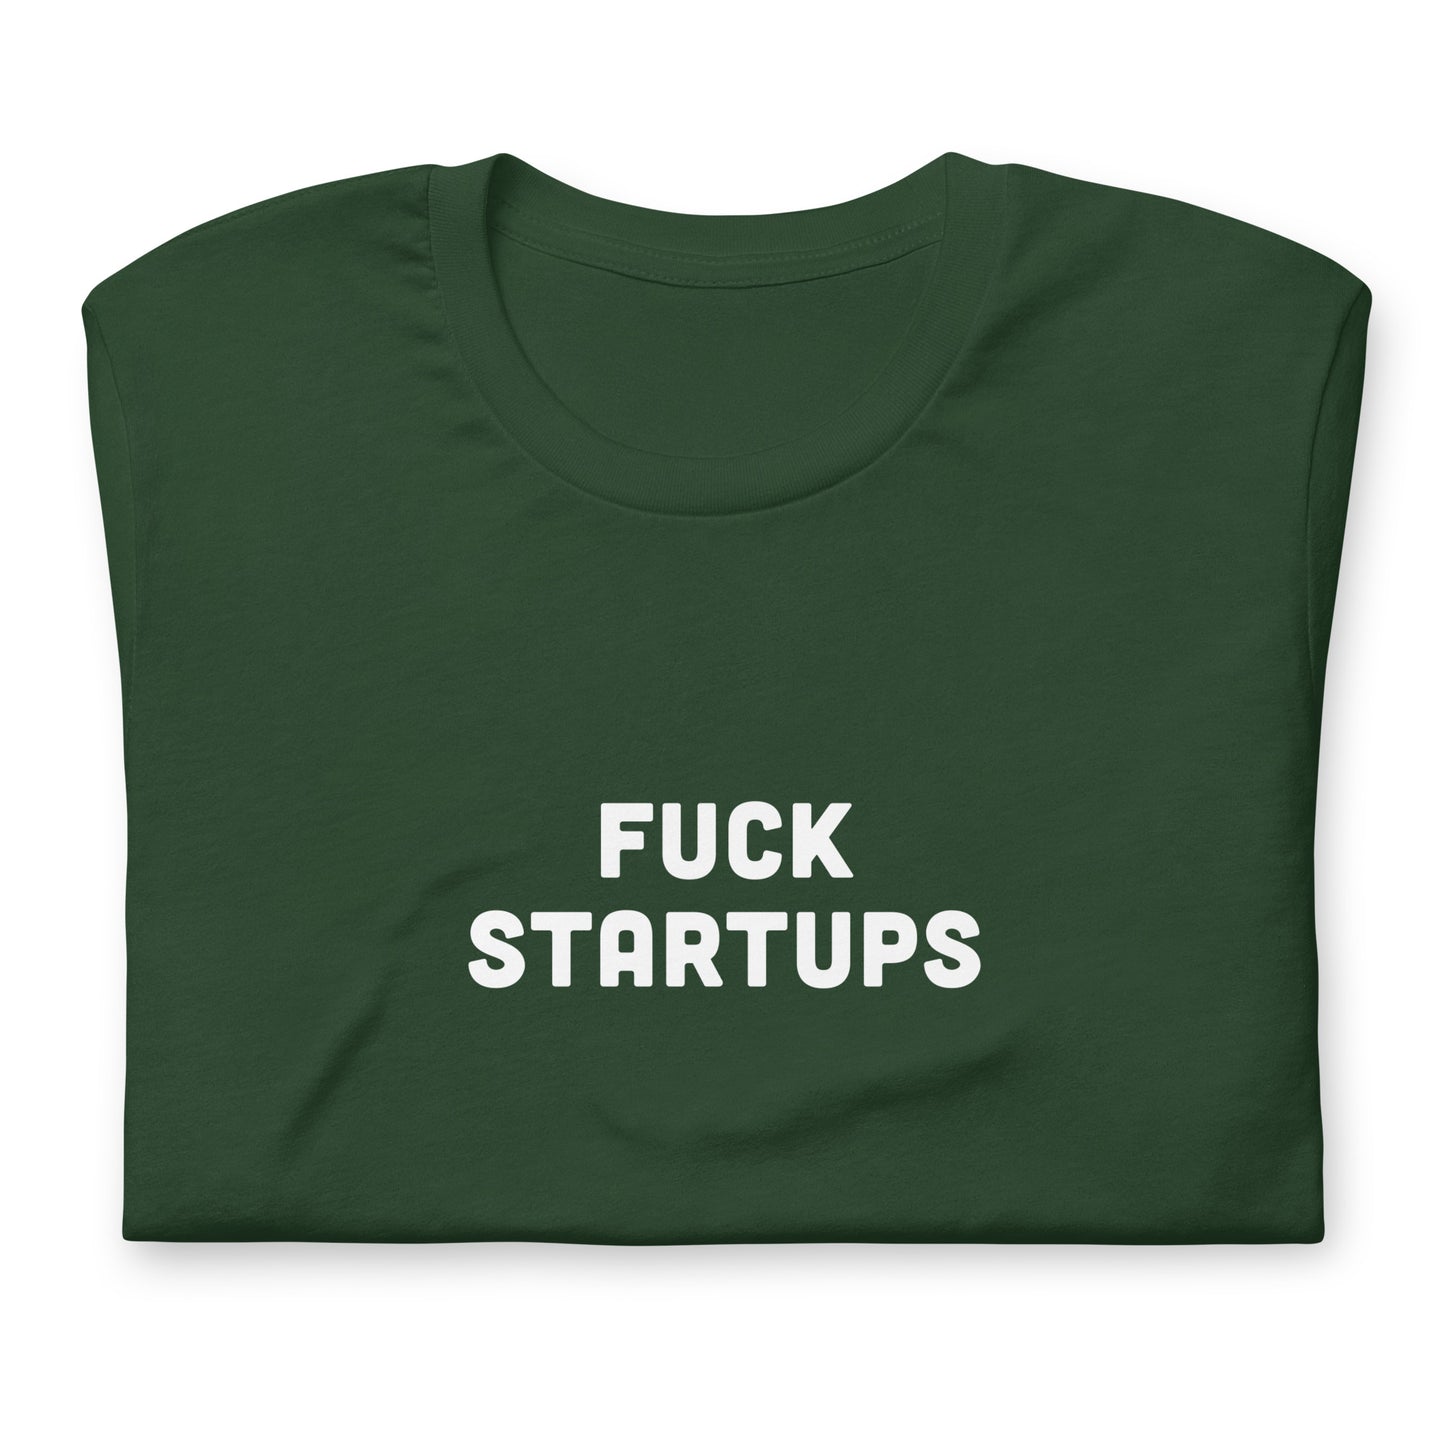 Fuck Startups T-Shirt Size 2XL Color Black